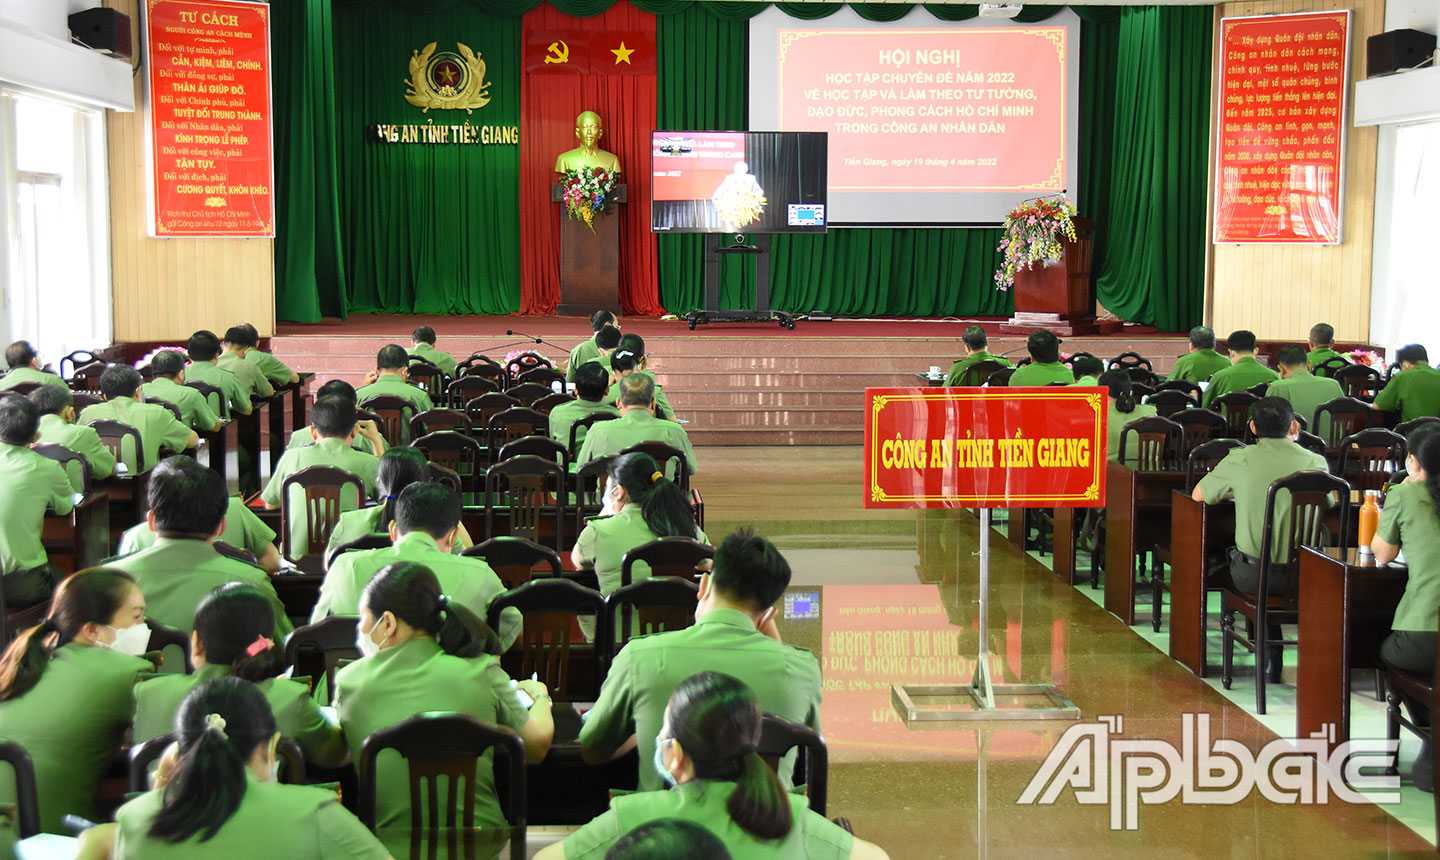 Hội nghị chuyên đề năm 2022 về học tập và làm theo tư tưởng, đạo đức, phong cách Hồ Chí Minh trong Công an nhân dân tại điểm cầu Công an Tiền Giang.                                                                                                                                                      Ảnh: LÊ HOÀI